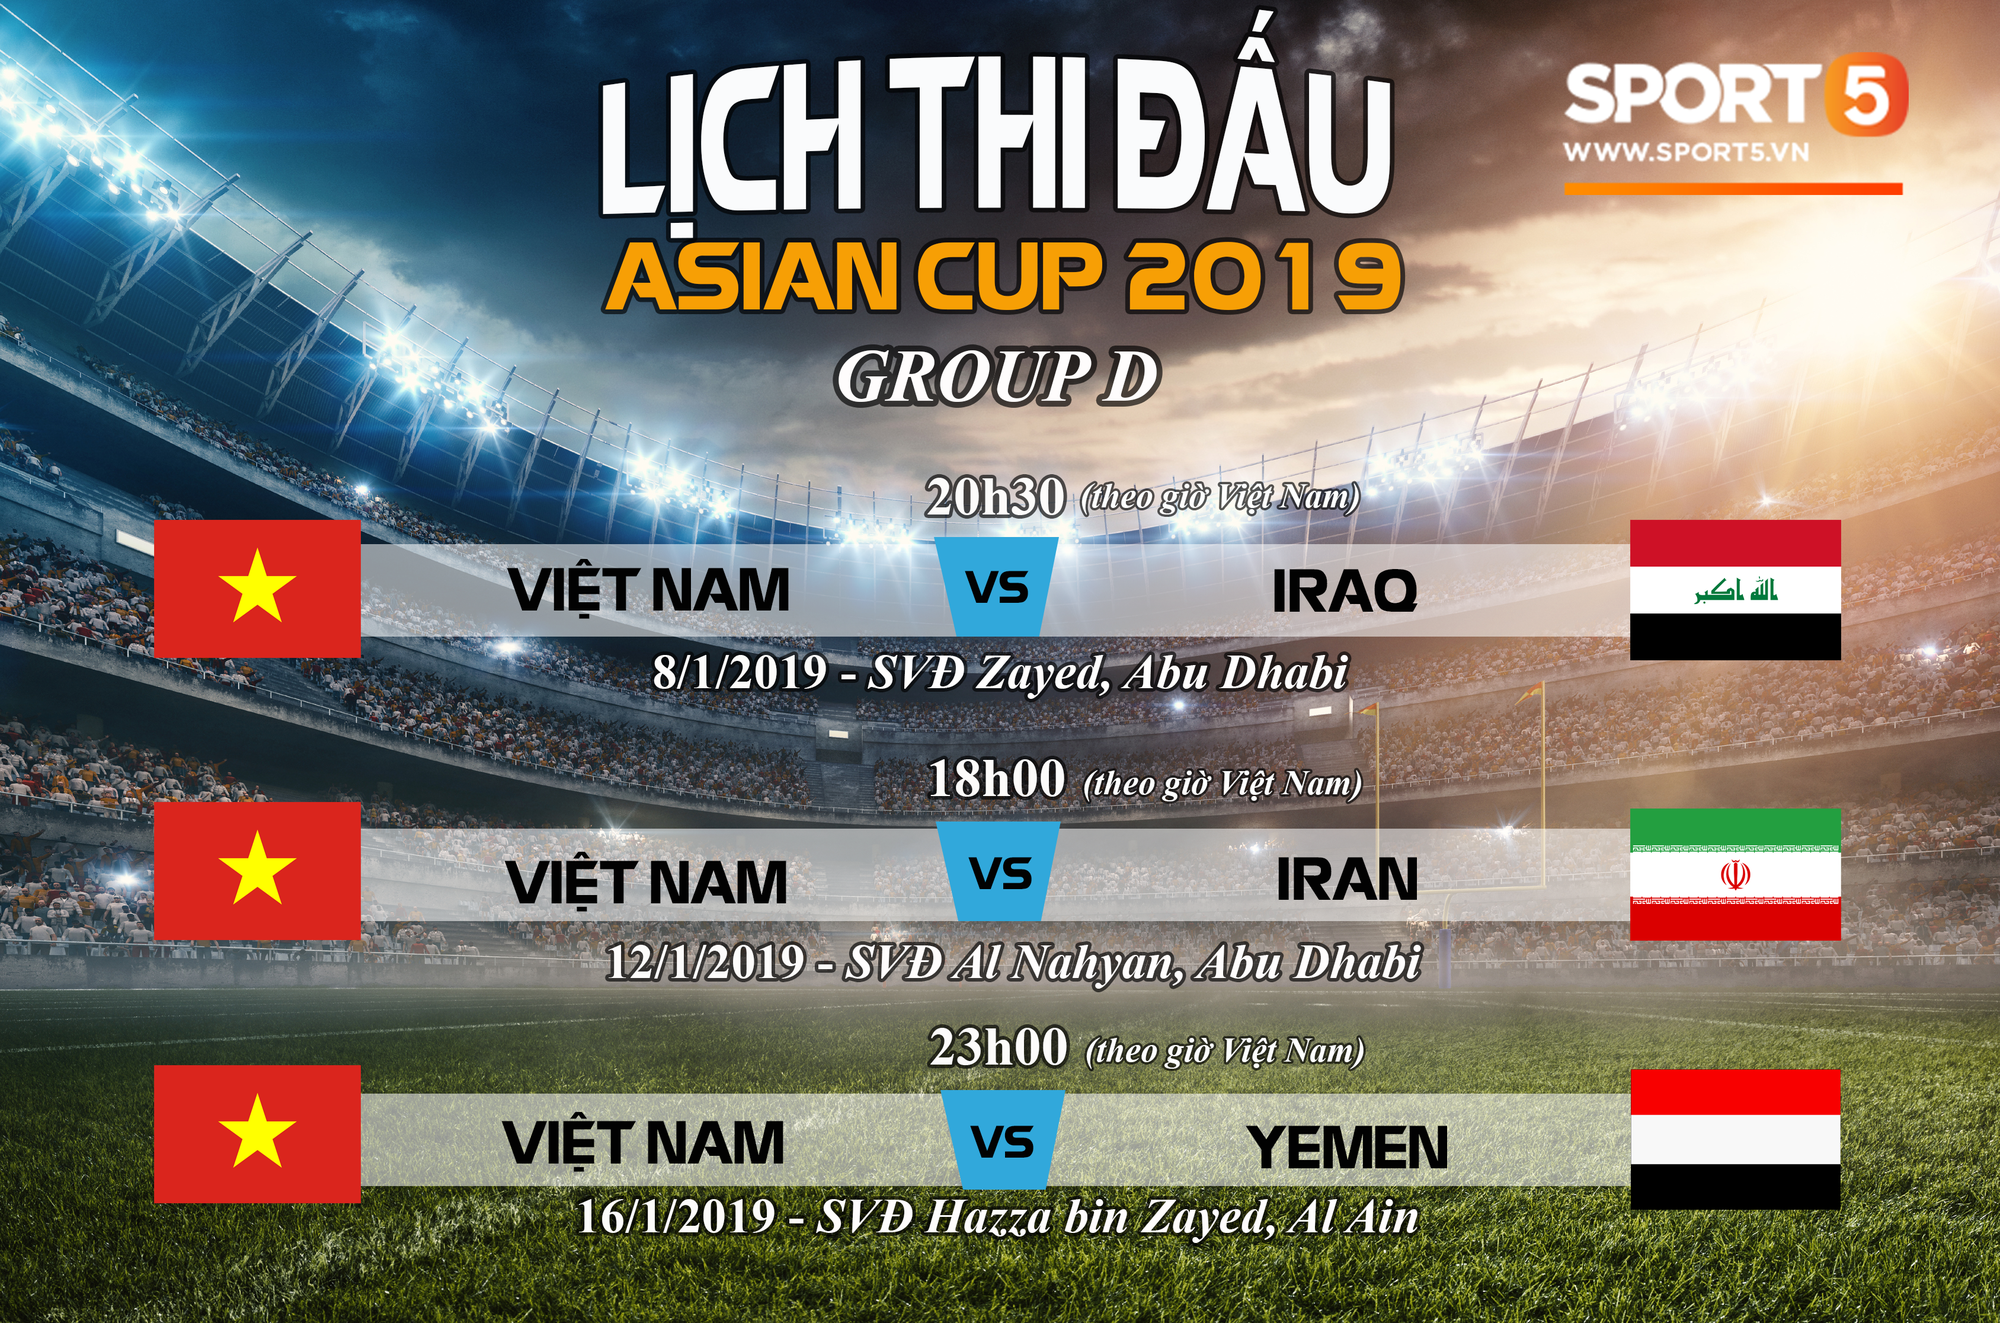 Chưa thi đấu, đội tuyển Việt Nam đã lập liên tiếp kỷ lục tại Asian Cup 2019-3